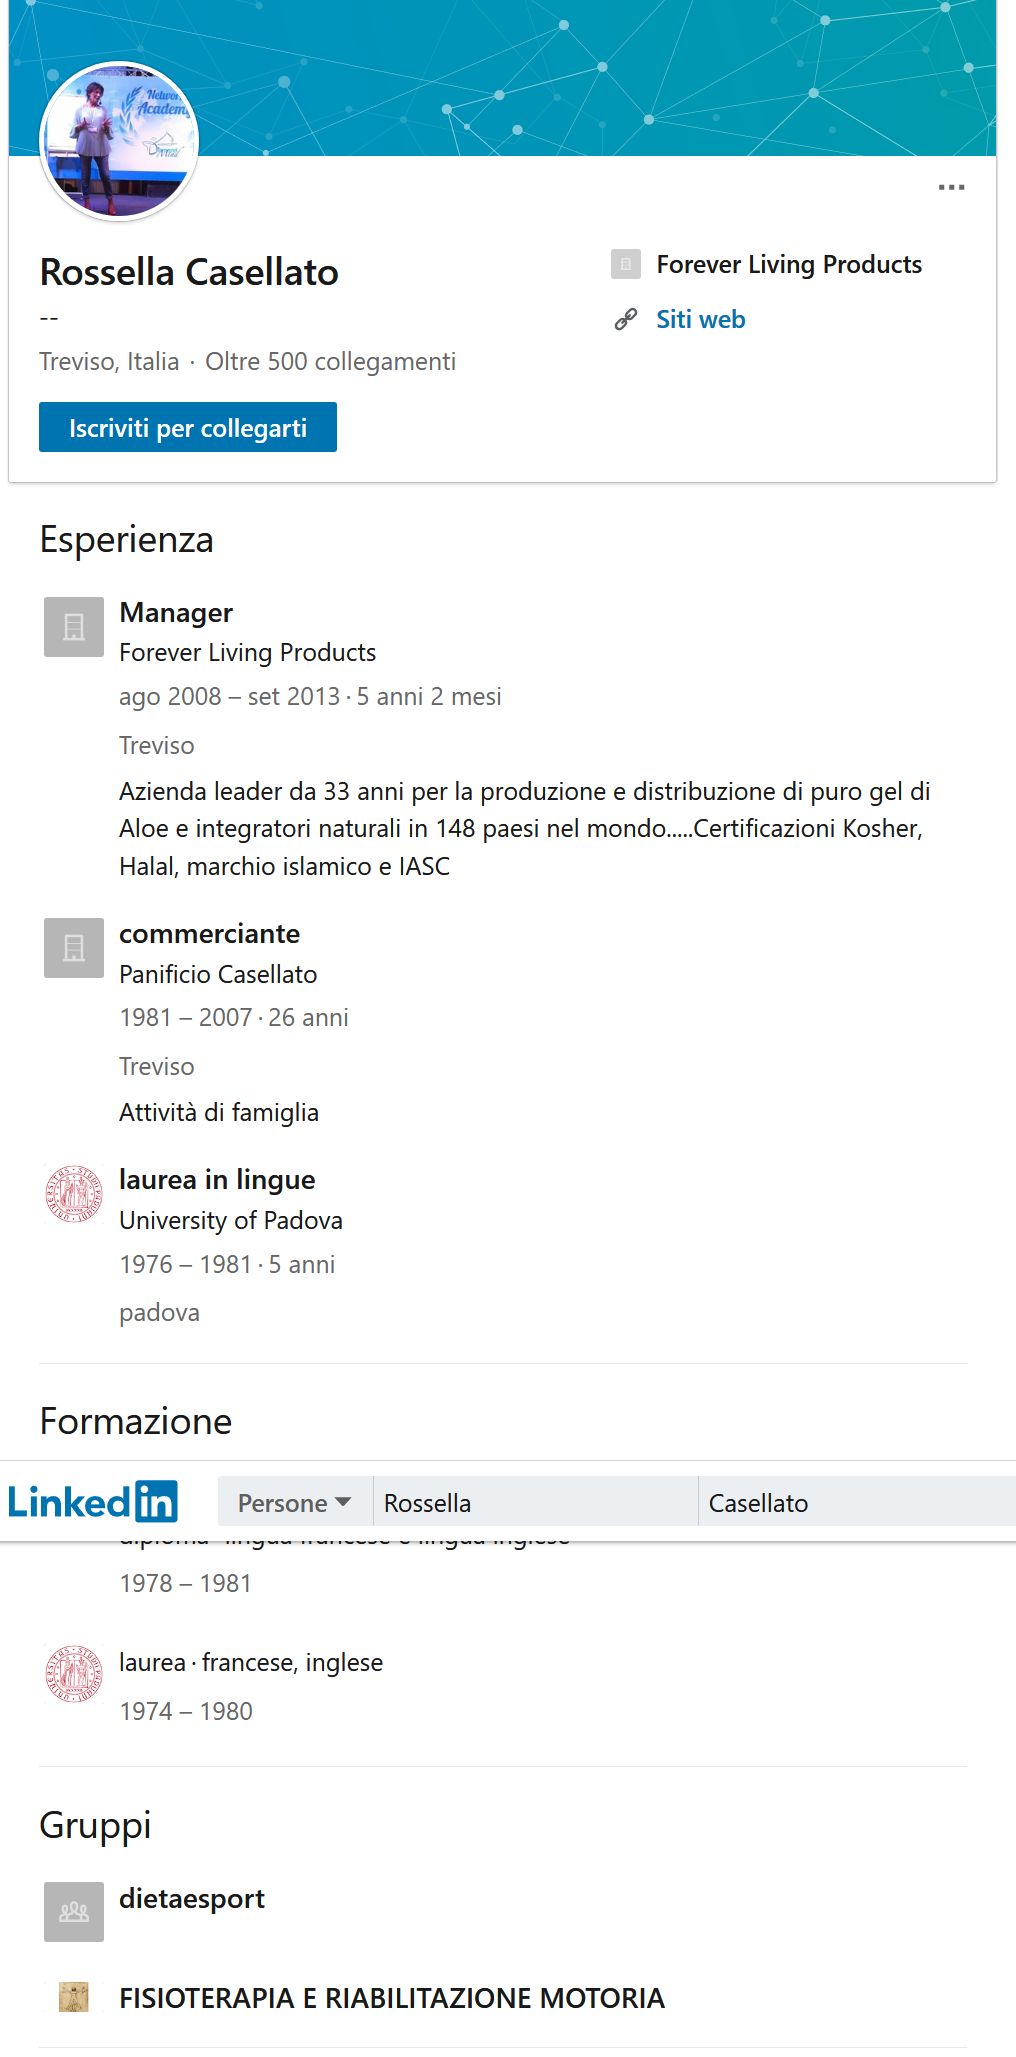 Screenshot_2019-12-15 Rossella Casellato - Treviso, Italia Profilo professionale LinkedIn.png